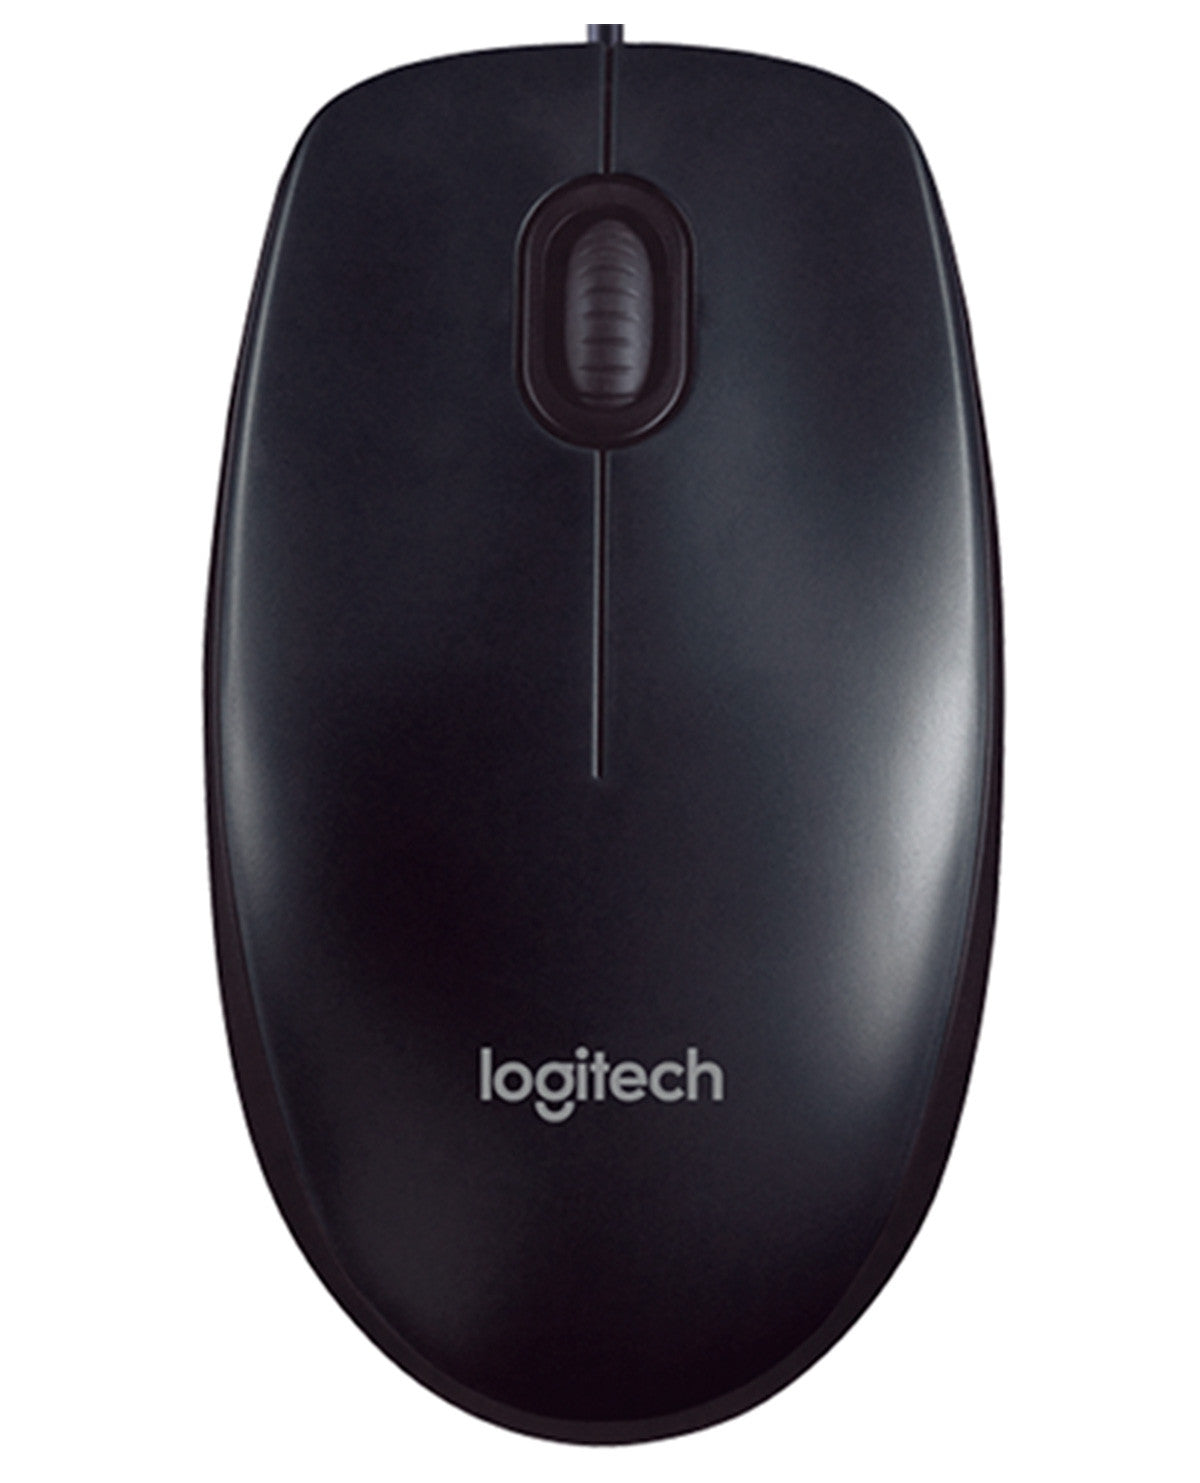 Mouse LOGITECH M90, Negro, USB, Óptico, 1000 DPI